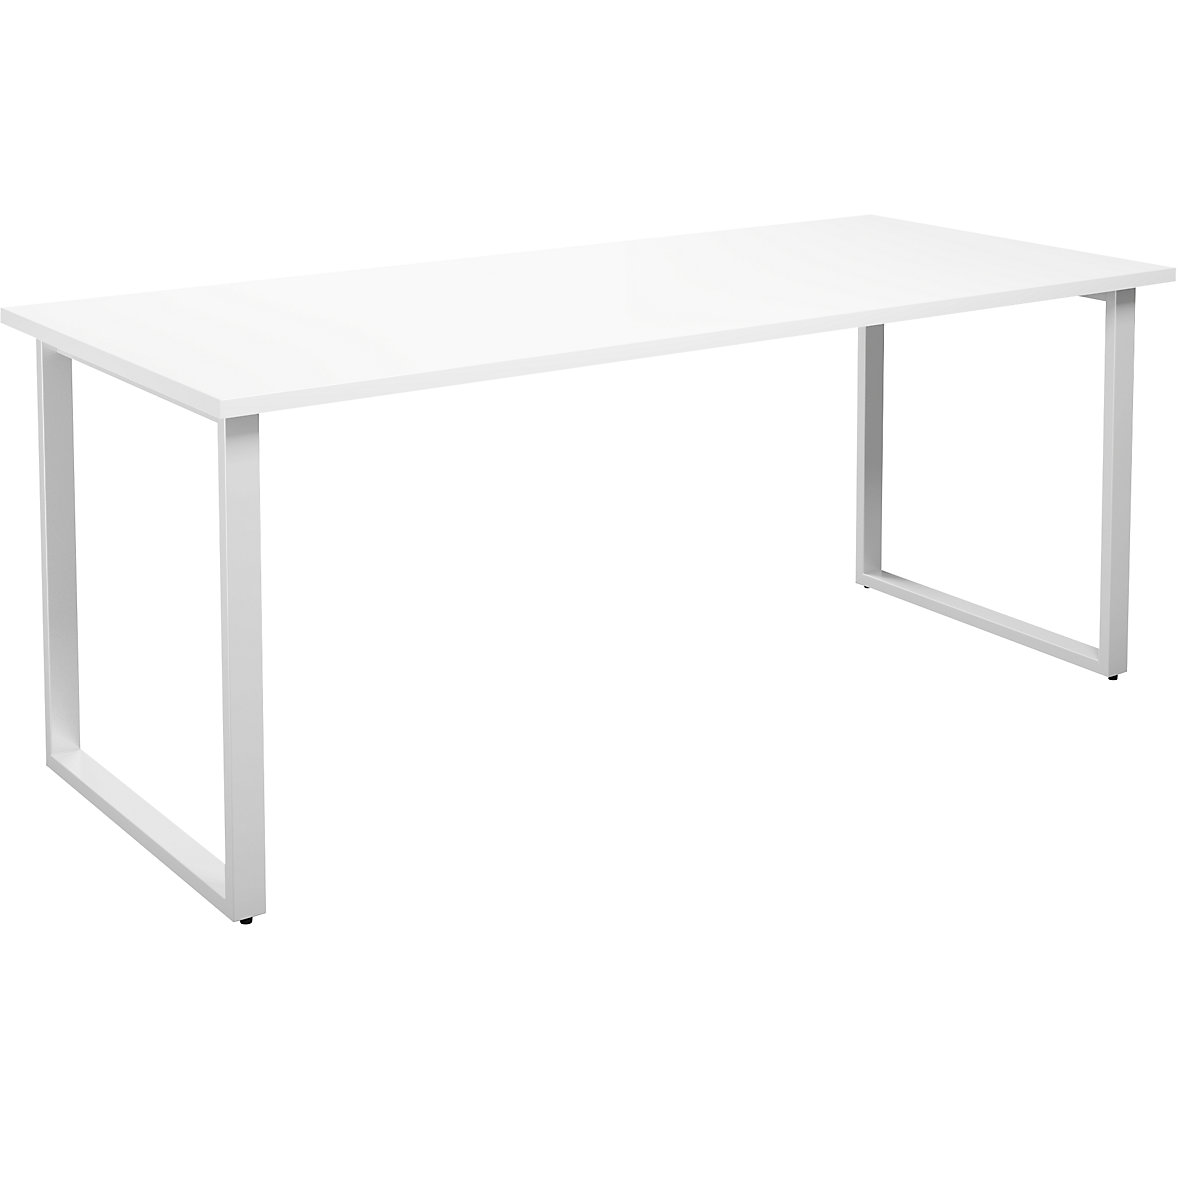 DUO-O multi-purpose desk, straight tabletop, WxD 1800 x 800 mm, white, white-16